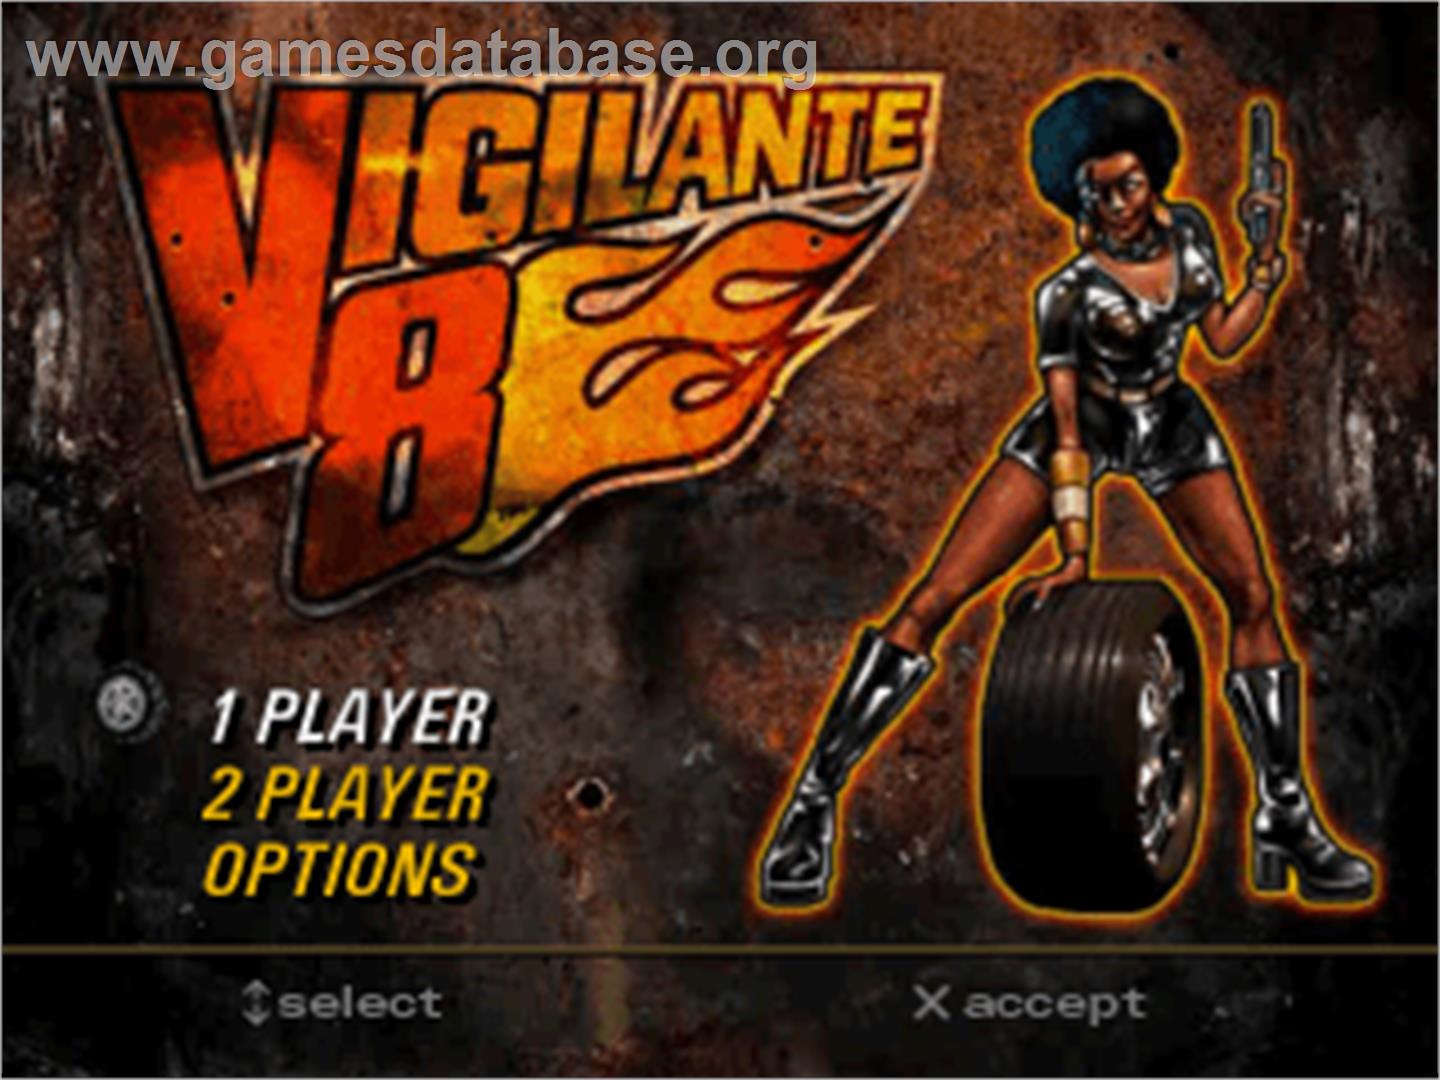 Vigilante 8 - Sony Playstation - Artwork - Title Screen